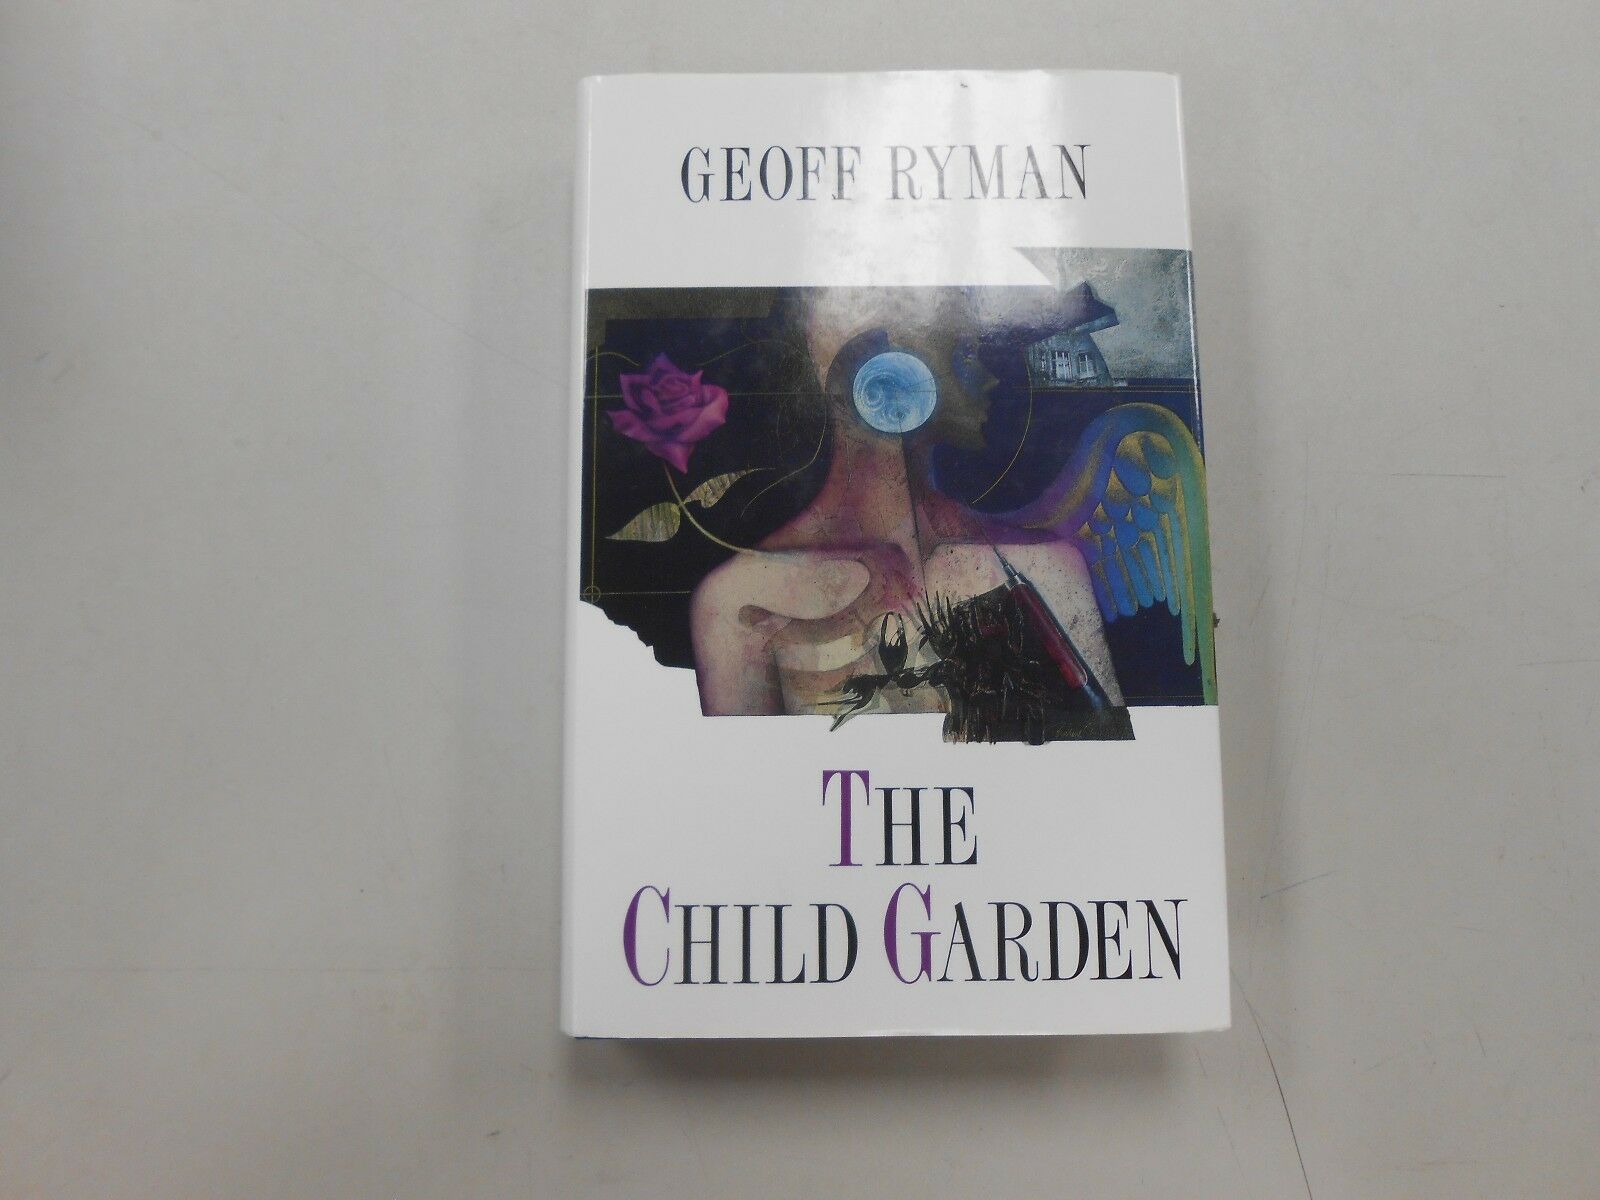 The Child Garden, A Great Novel by Geoff Ryman